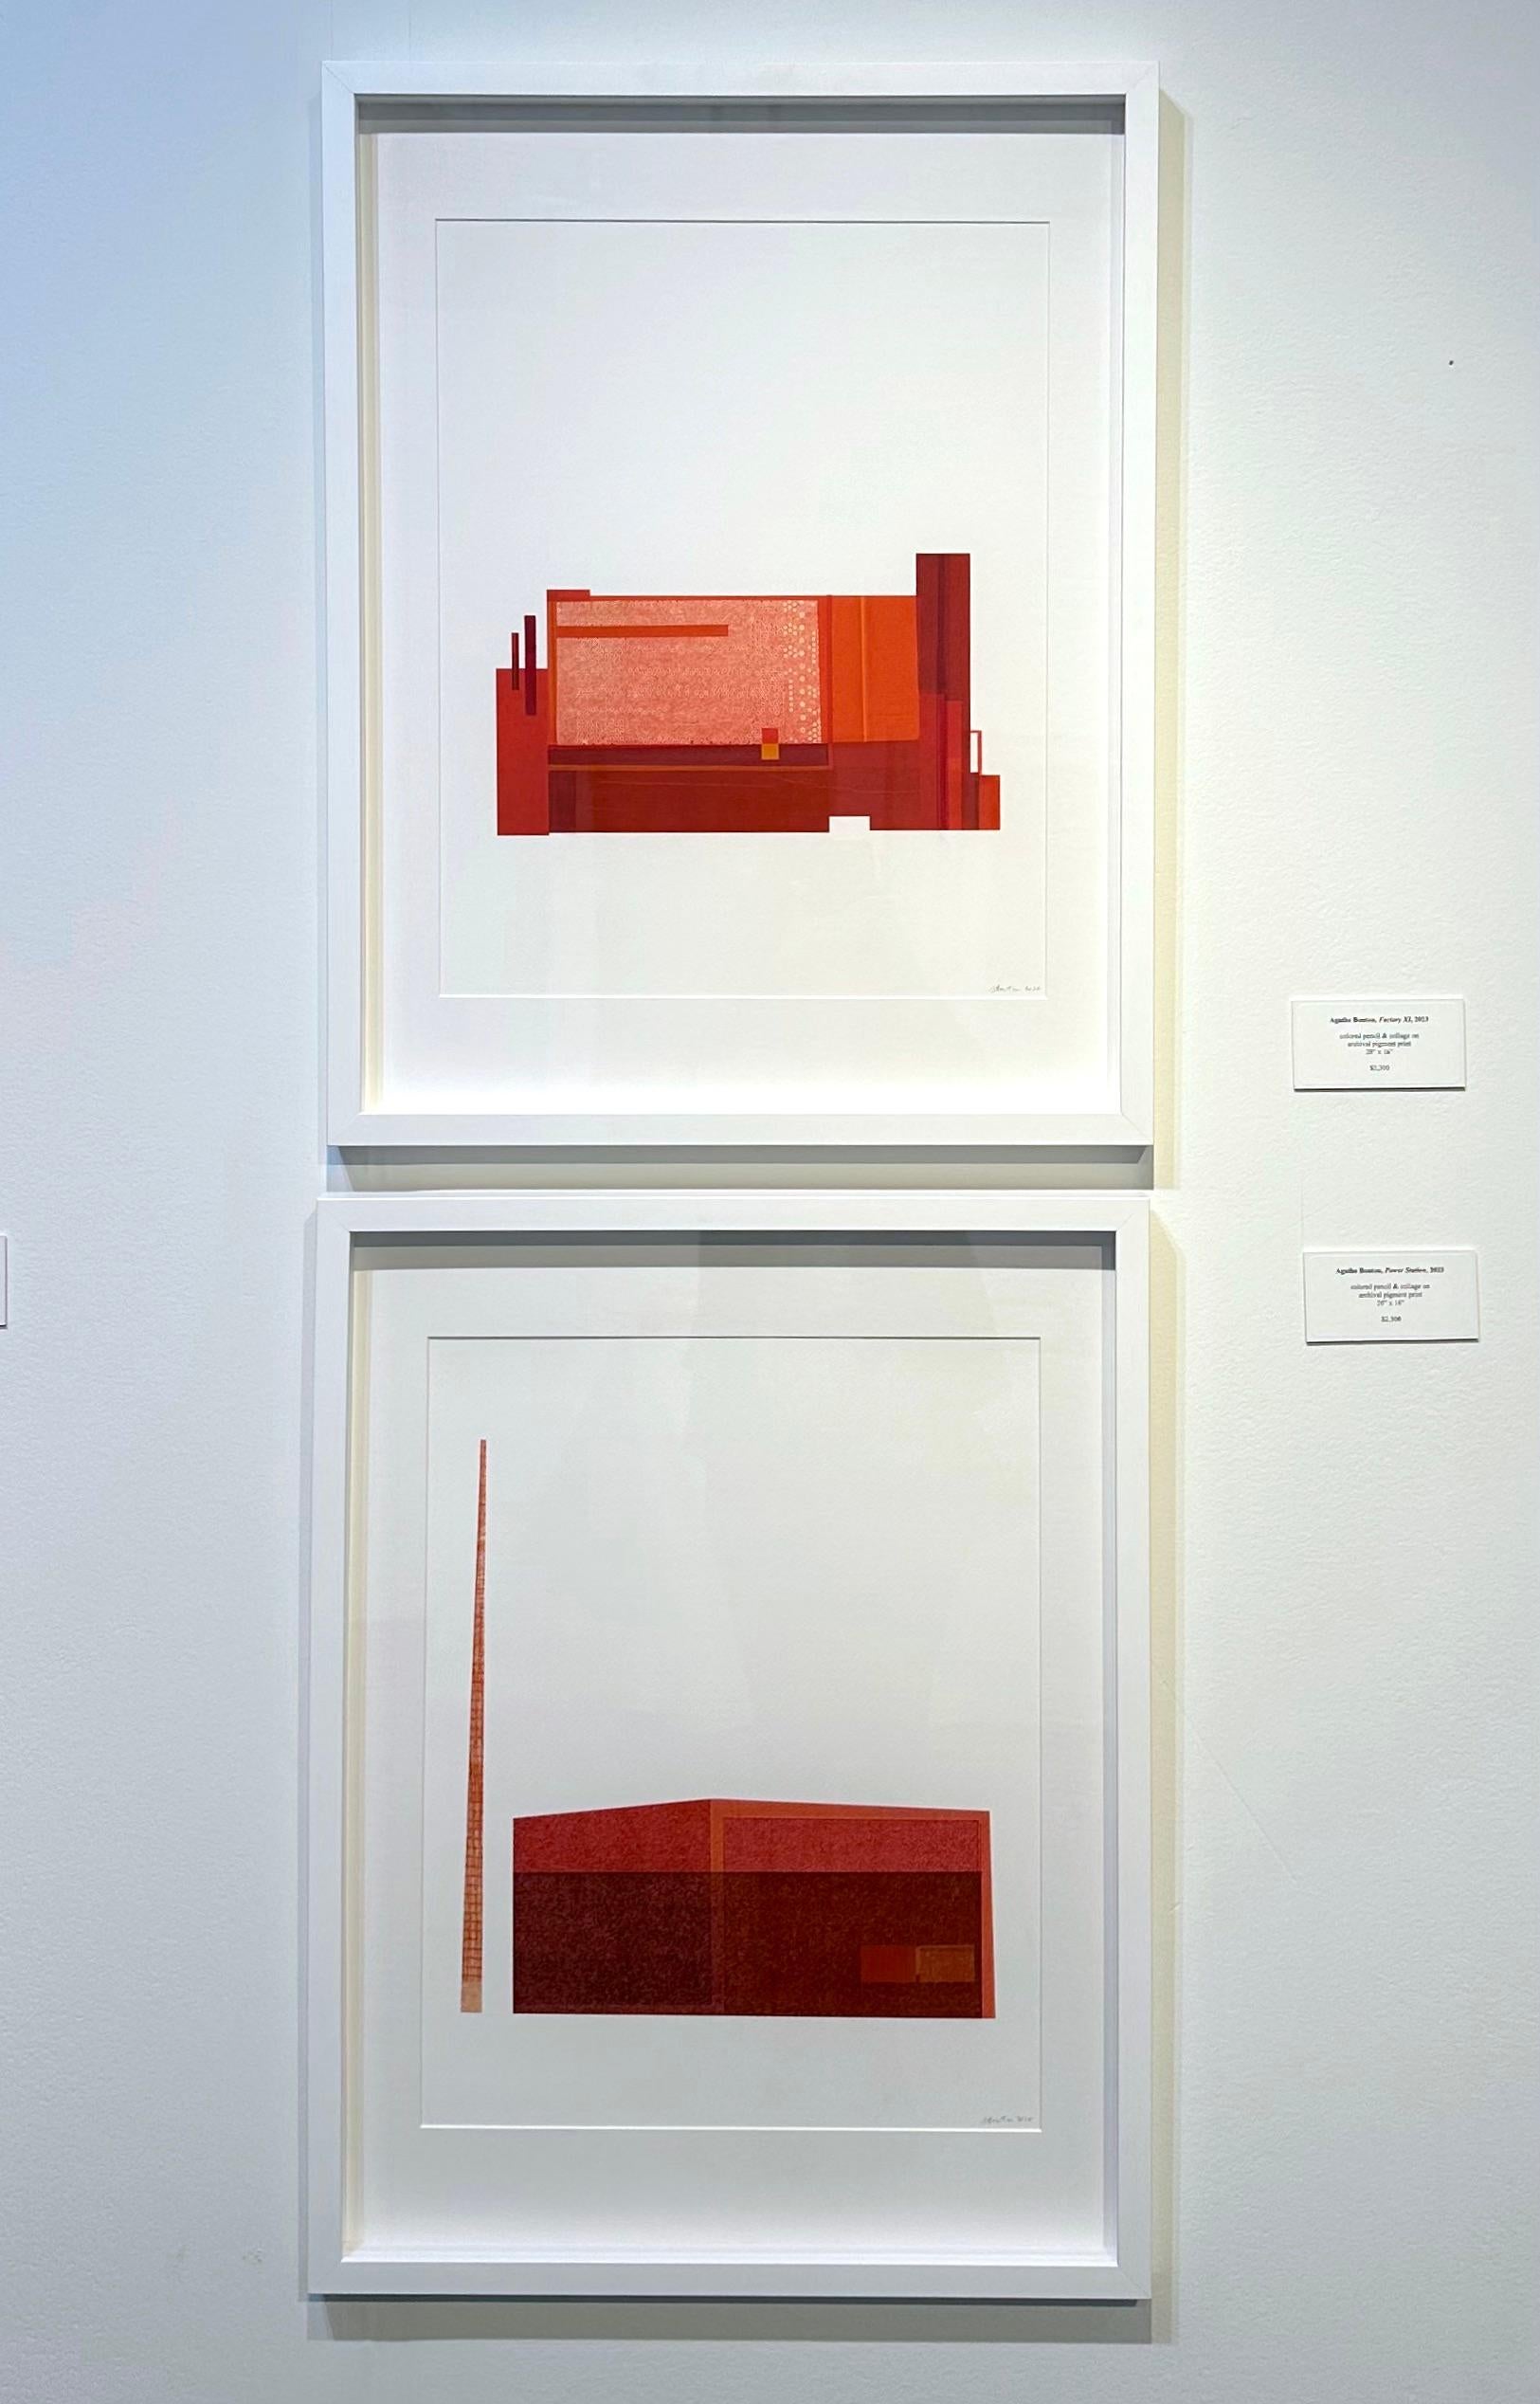 Factory XII : collage architectural urbain moderniste sur monoimpression en rouge, non encadré - Contemporain Print par Agathe Bouton